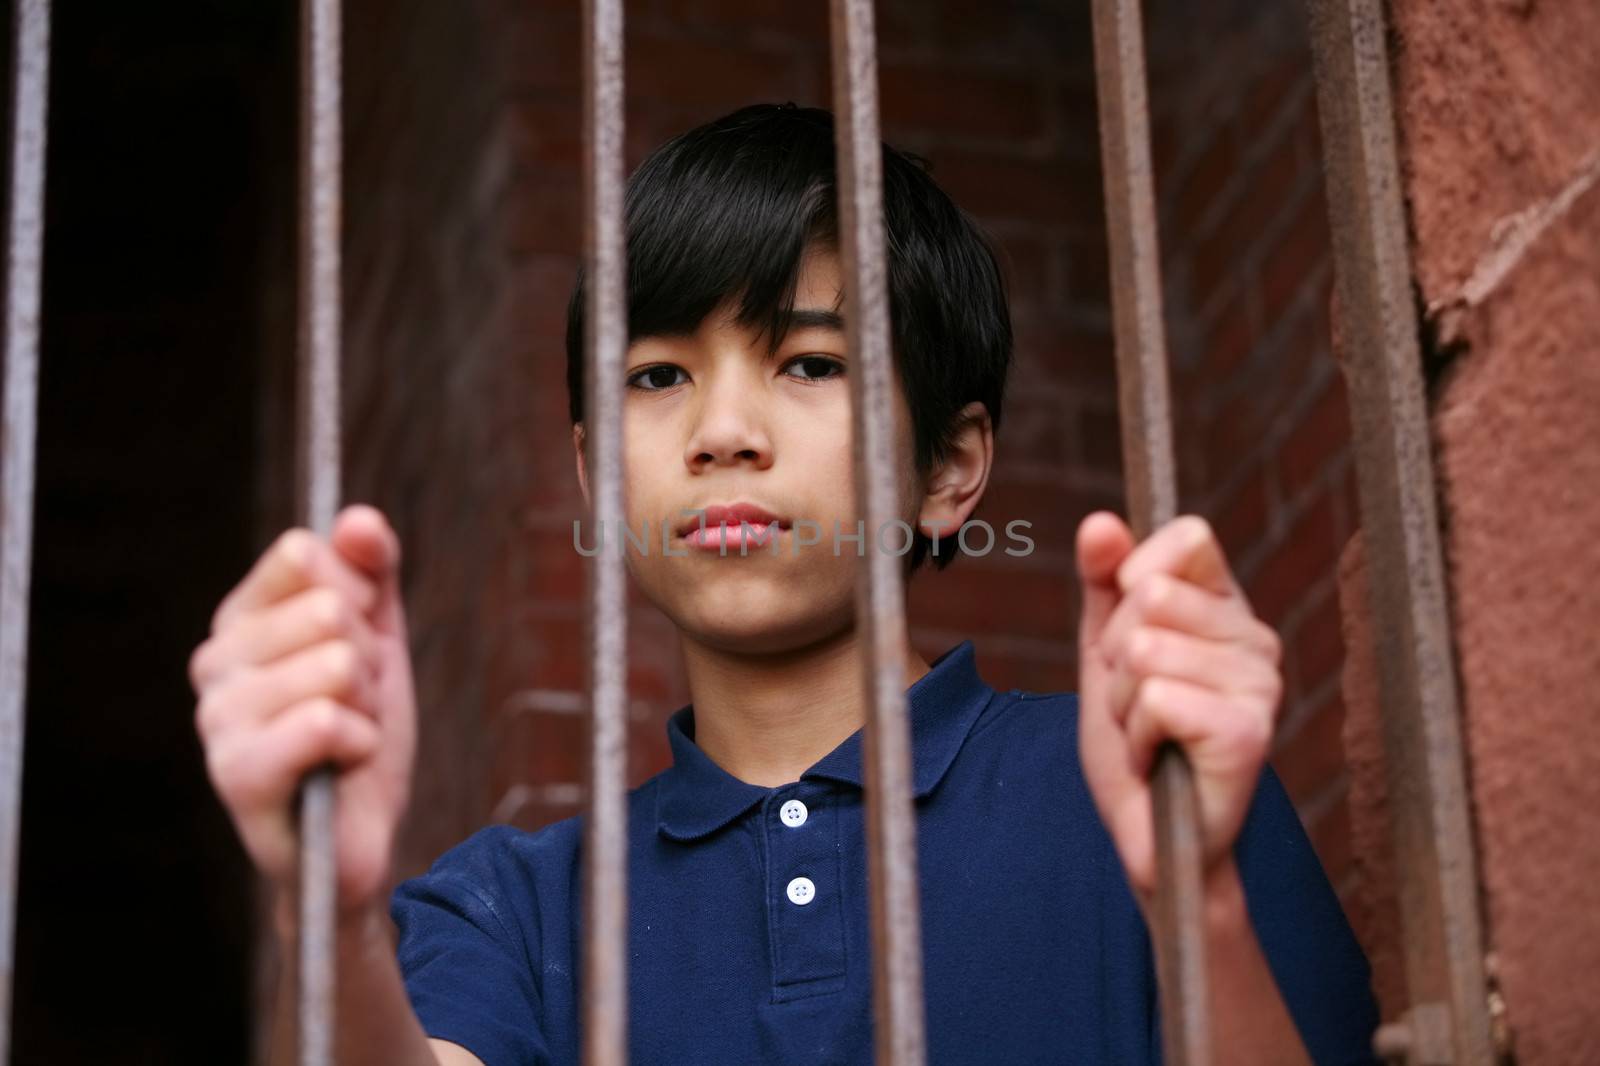 Boy standing behind bars by jarenwicklund